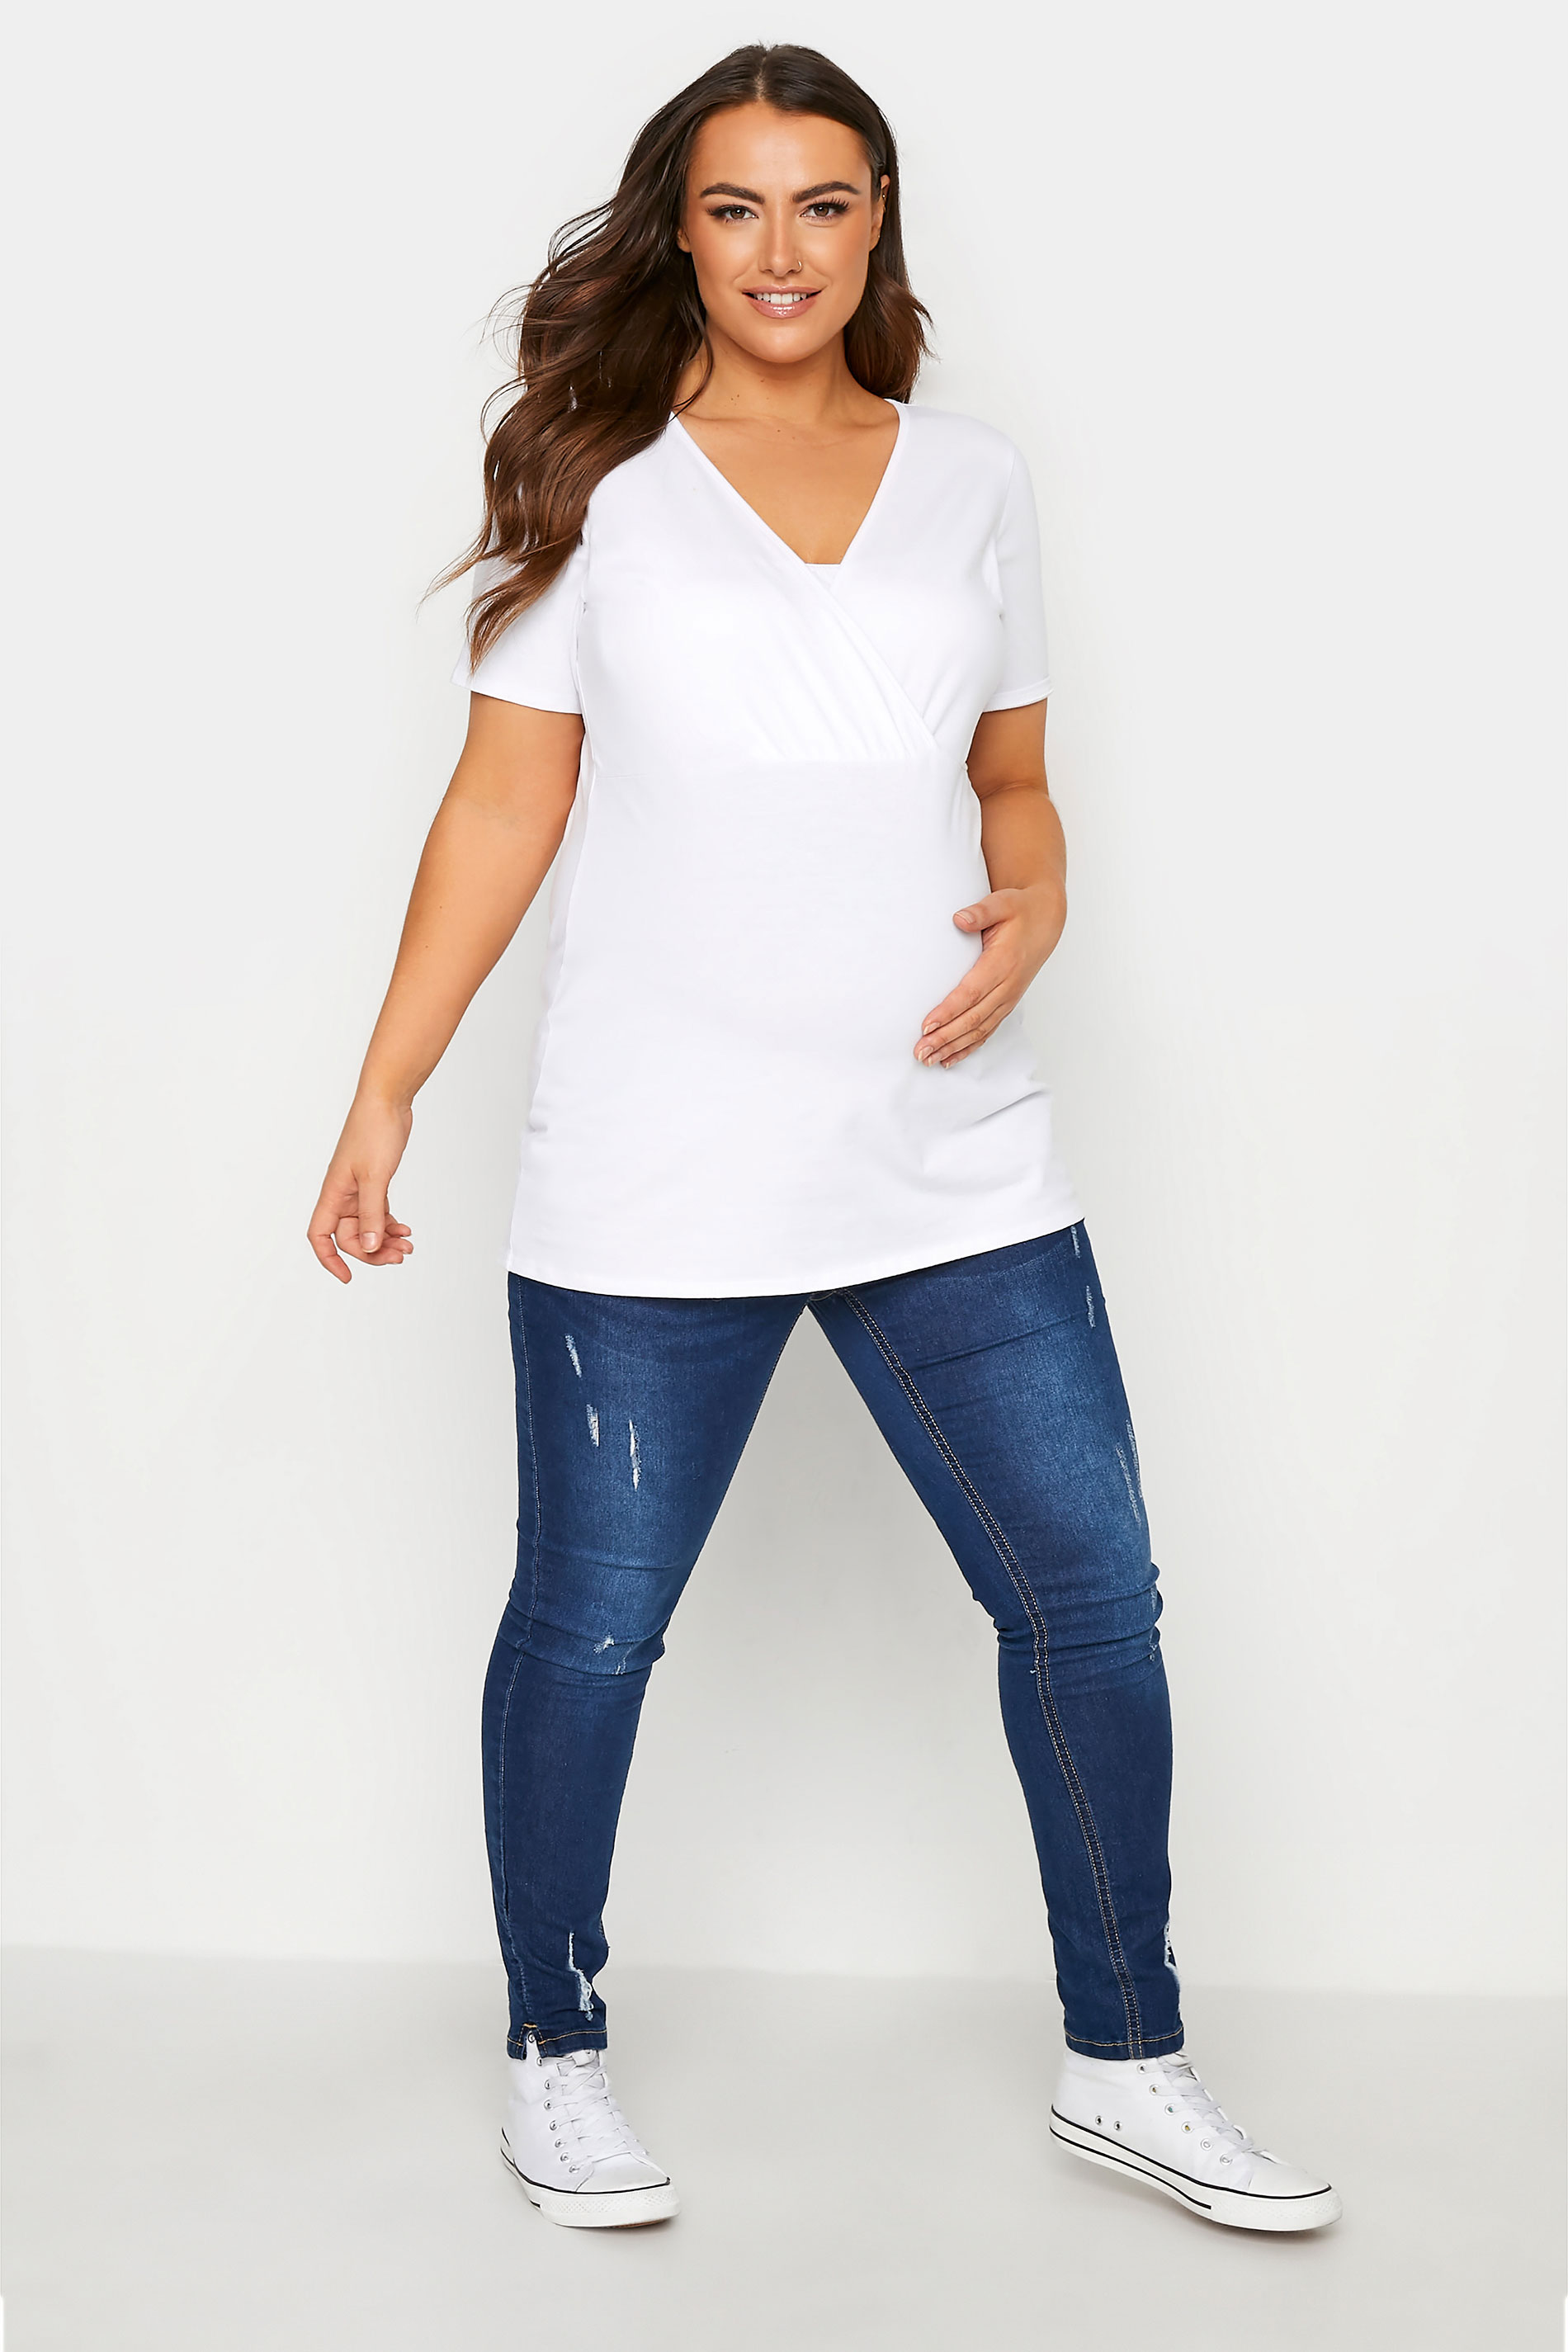 Grande taille  Vêtements de Grossesse Grande taille  Tops et t-shirts de grossesse | BUMP IT UP MATERNITY - Top Blanc en Coton d'Allaitement - BS70681